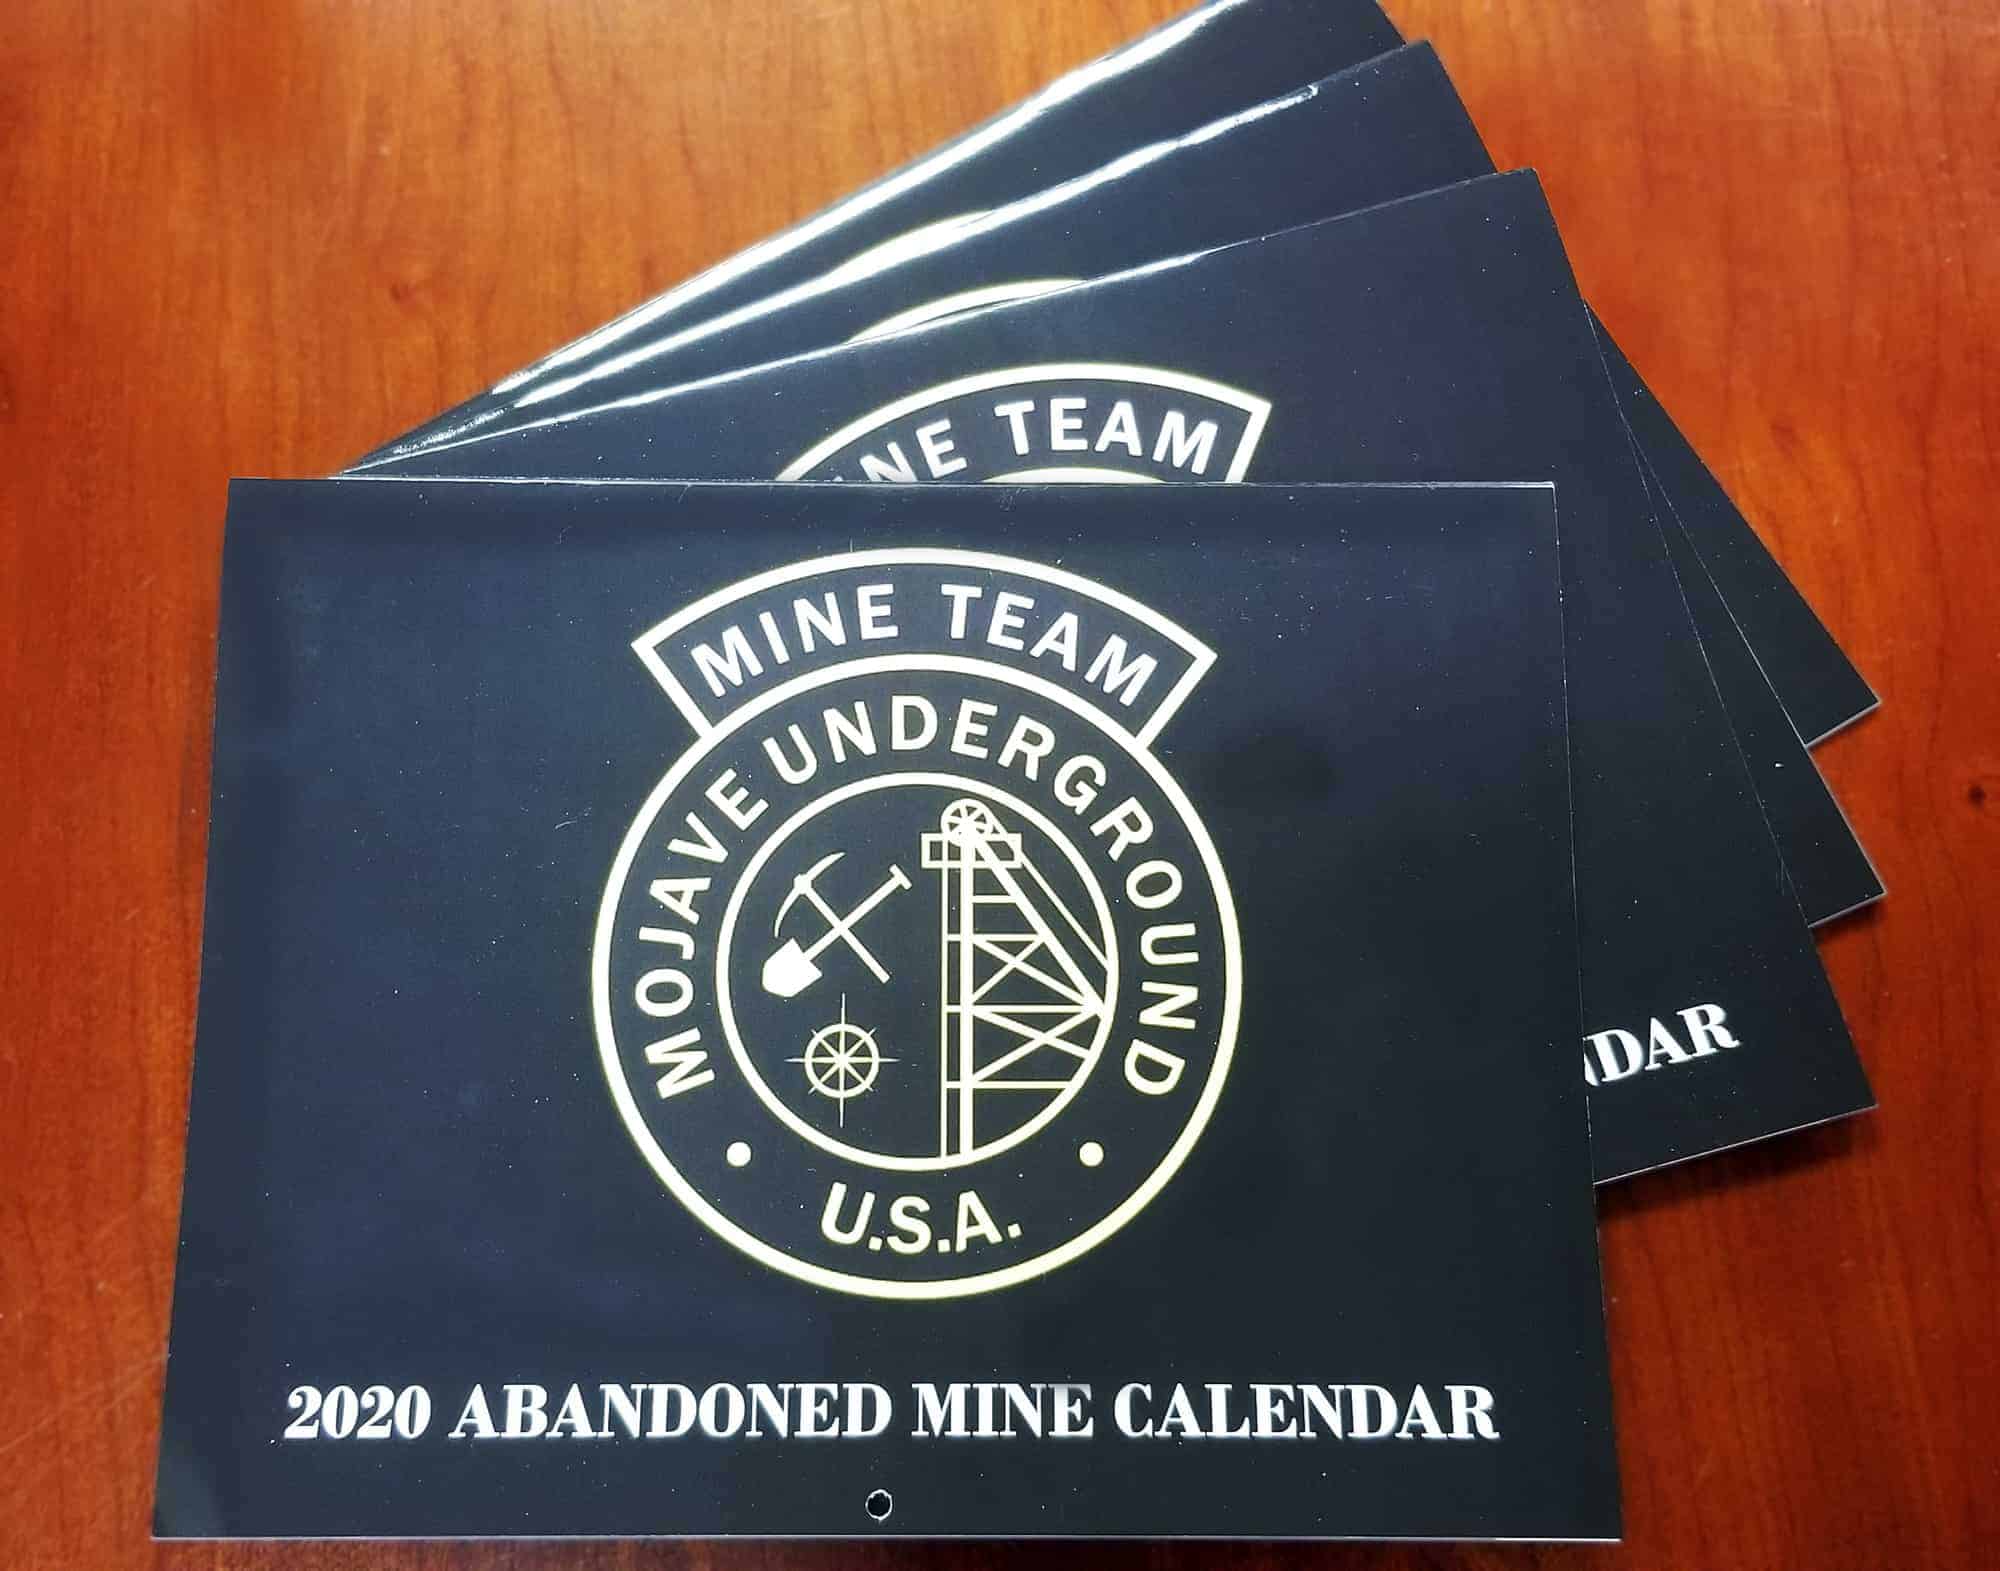 Mojave Underground 2020 Abandoned Mines calendars spread on table. 